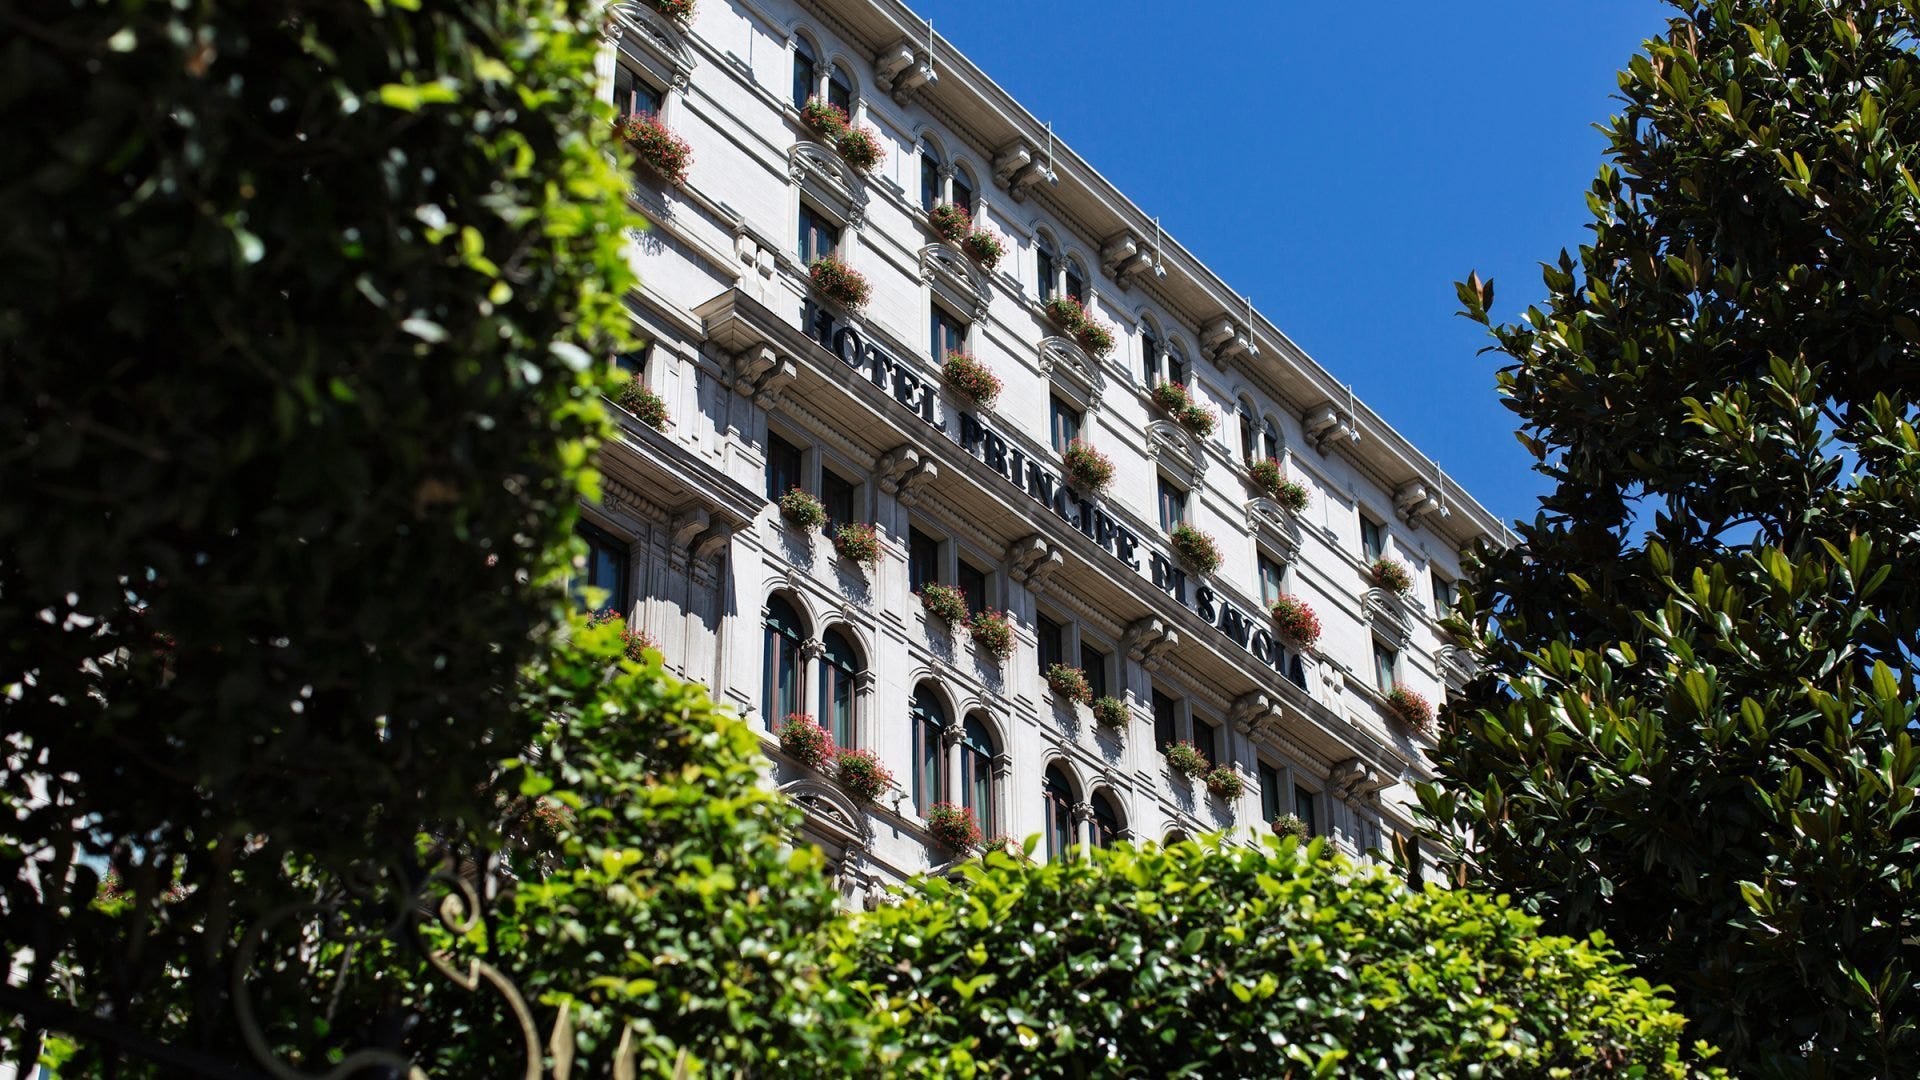 La facciata del Principe di Savoia di Milano  Tecnologia e “coccole”: come la pandemia ha cambiato gli hotel di lusso